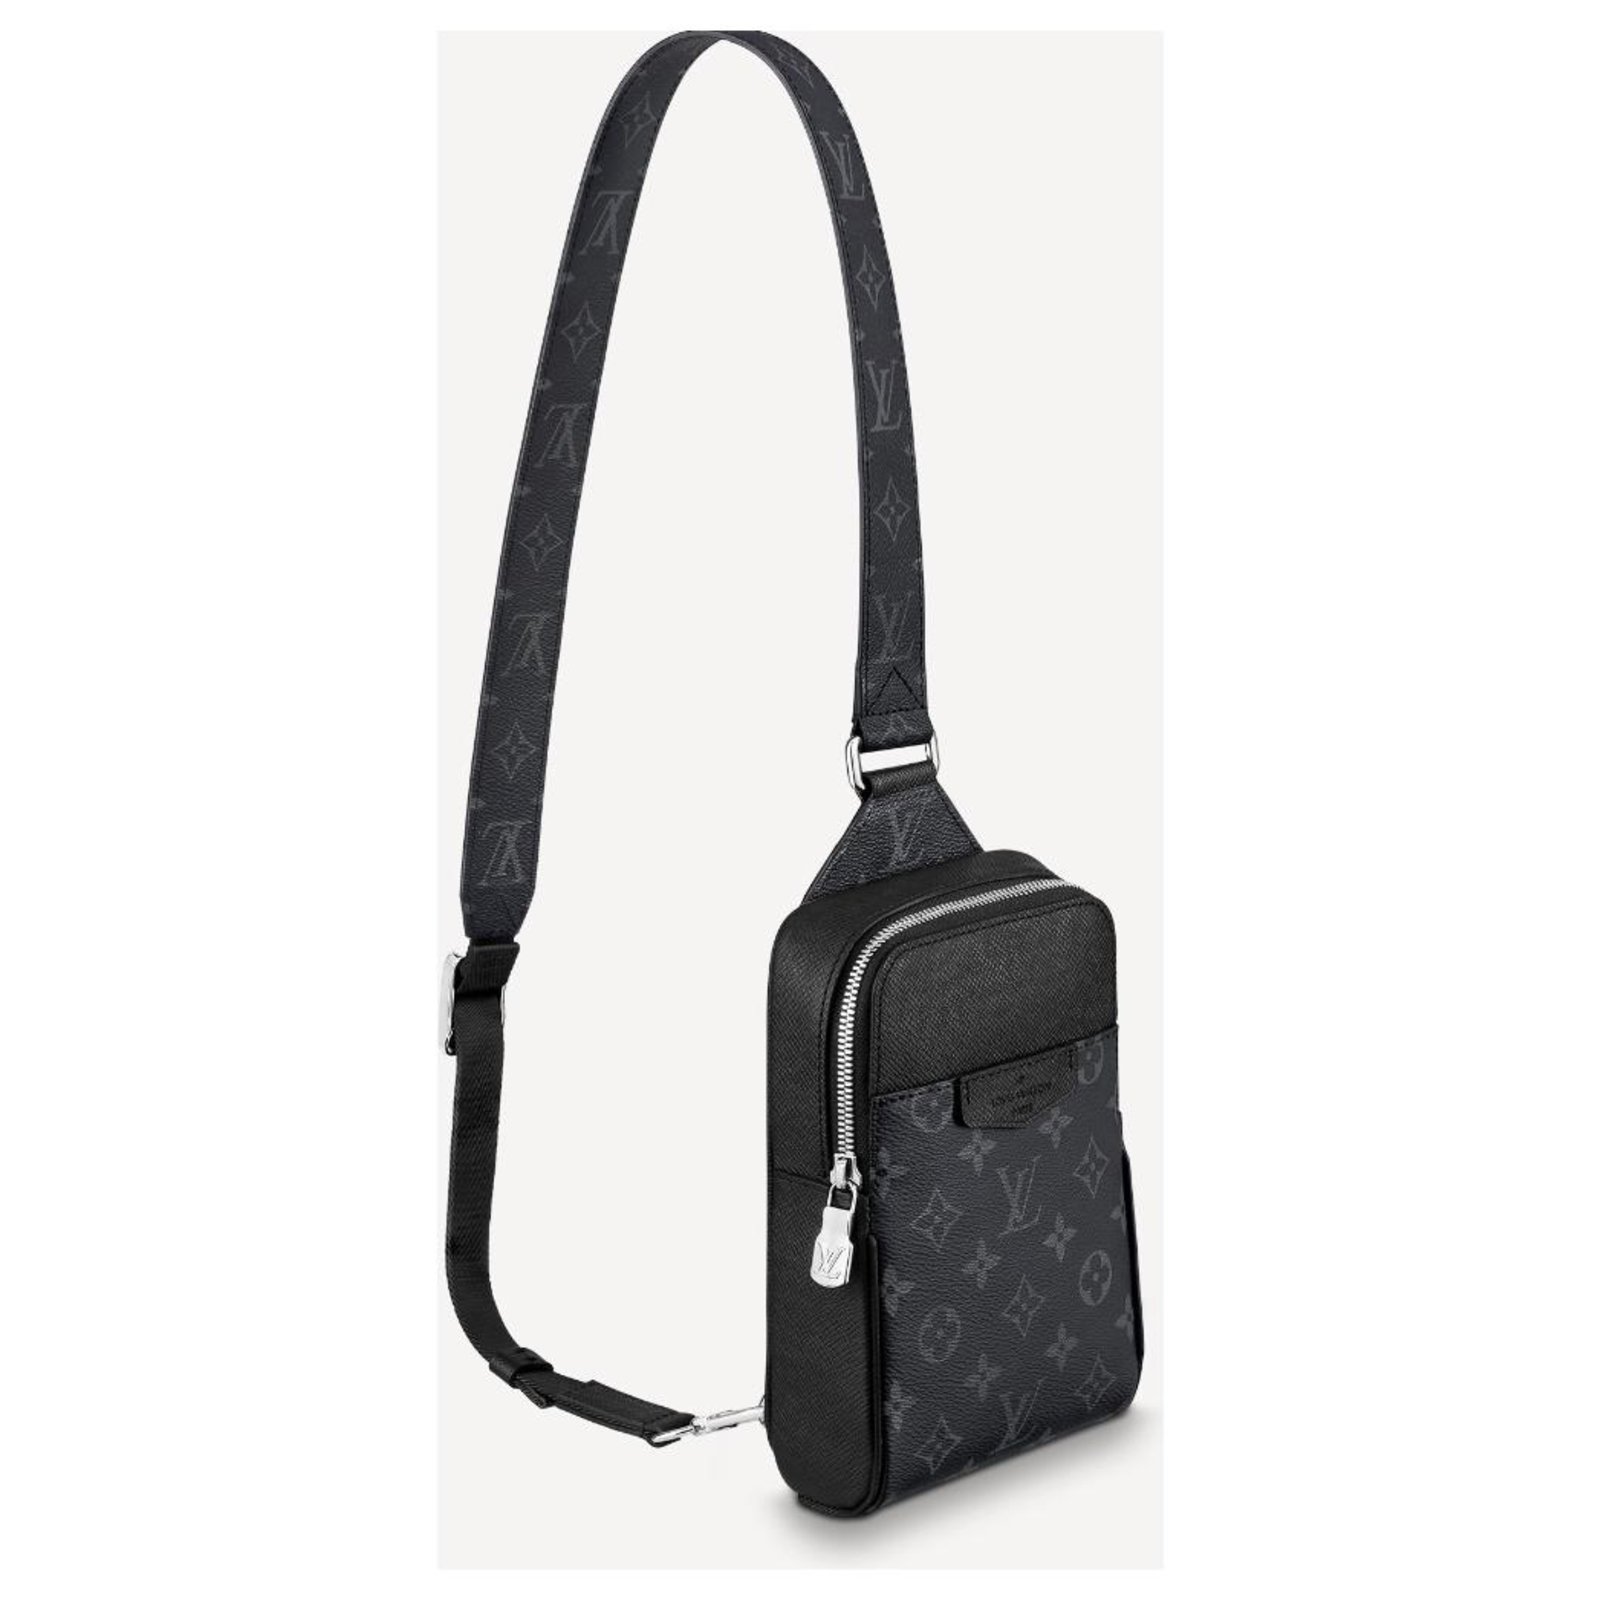 lv sling bag price